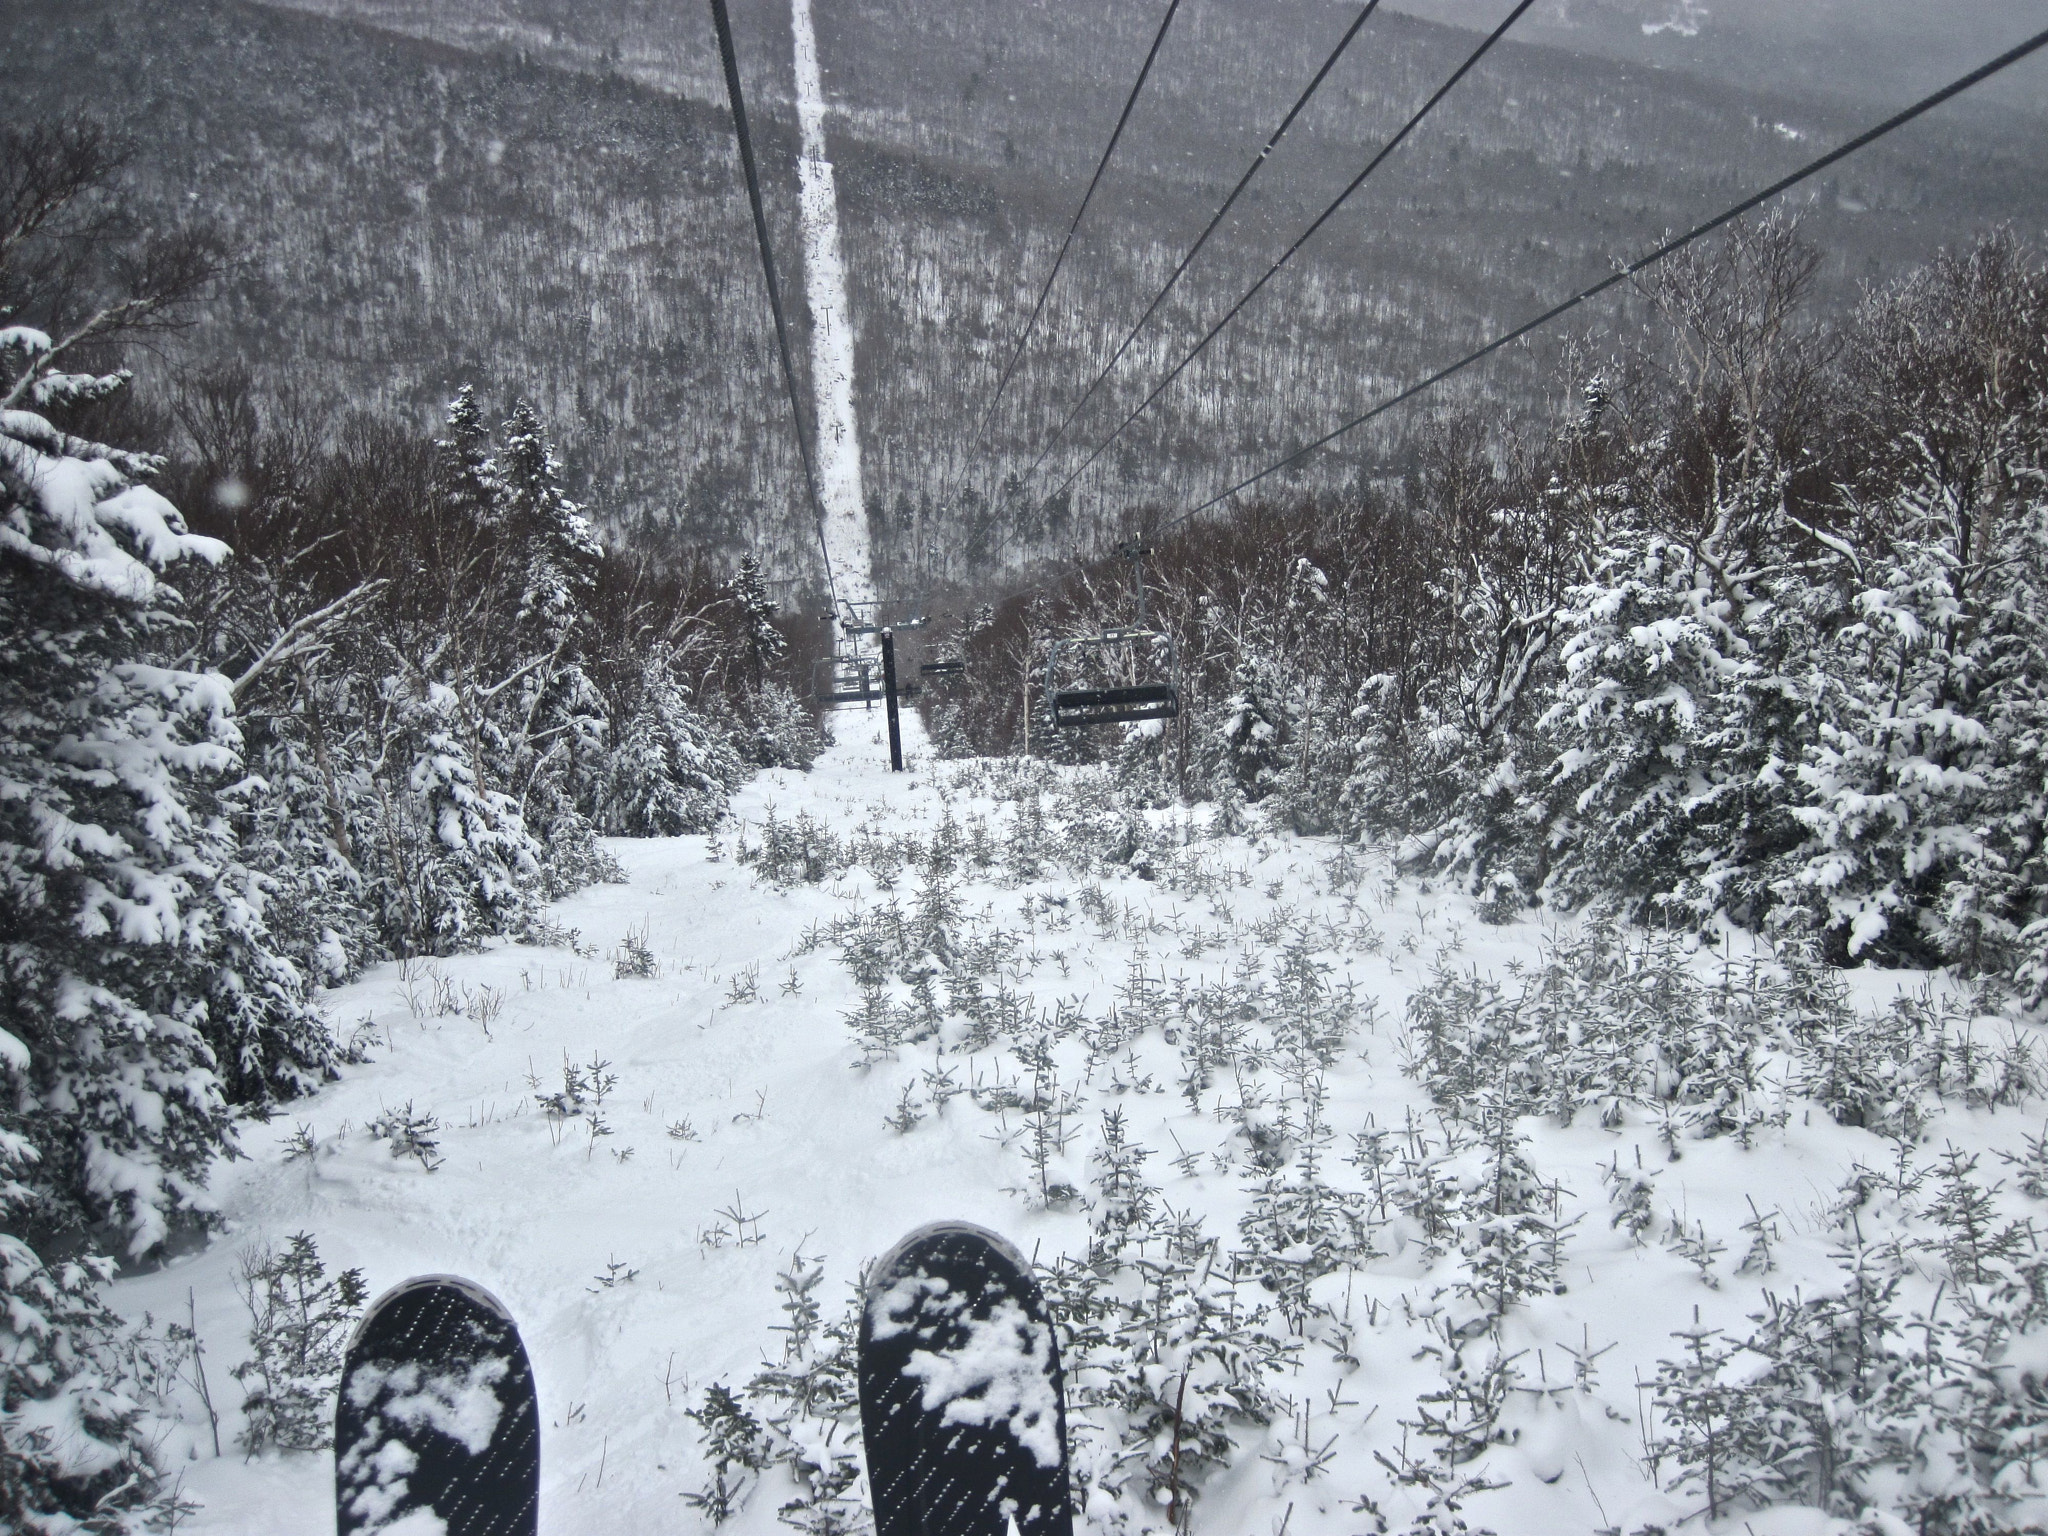 Canon PowerShot D10 sample photo. Sugarbush mount ellen lift skis photography